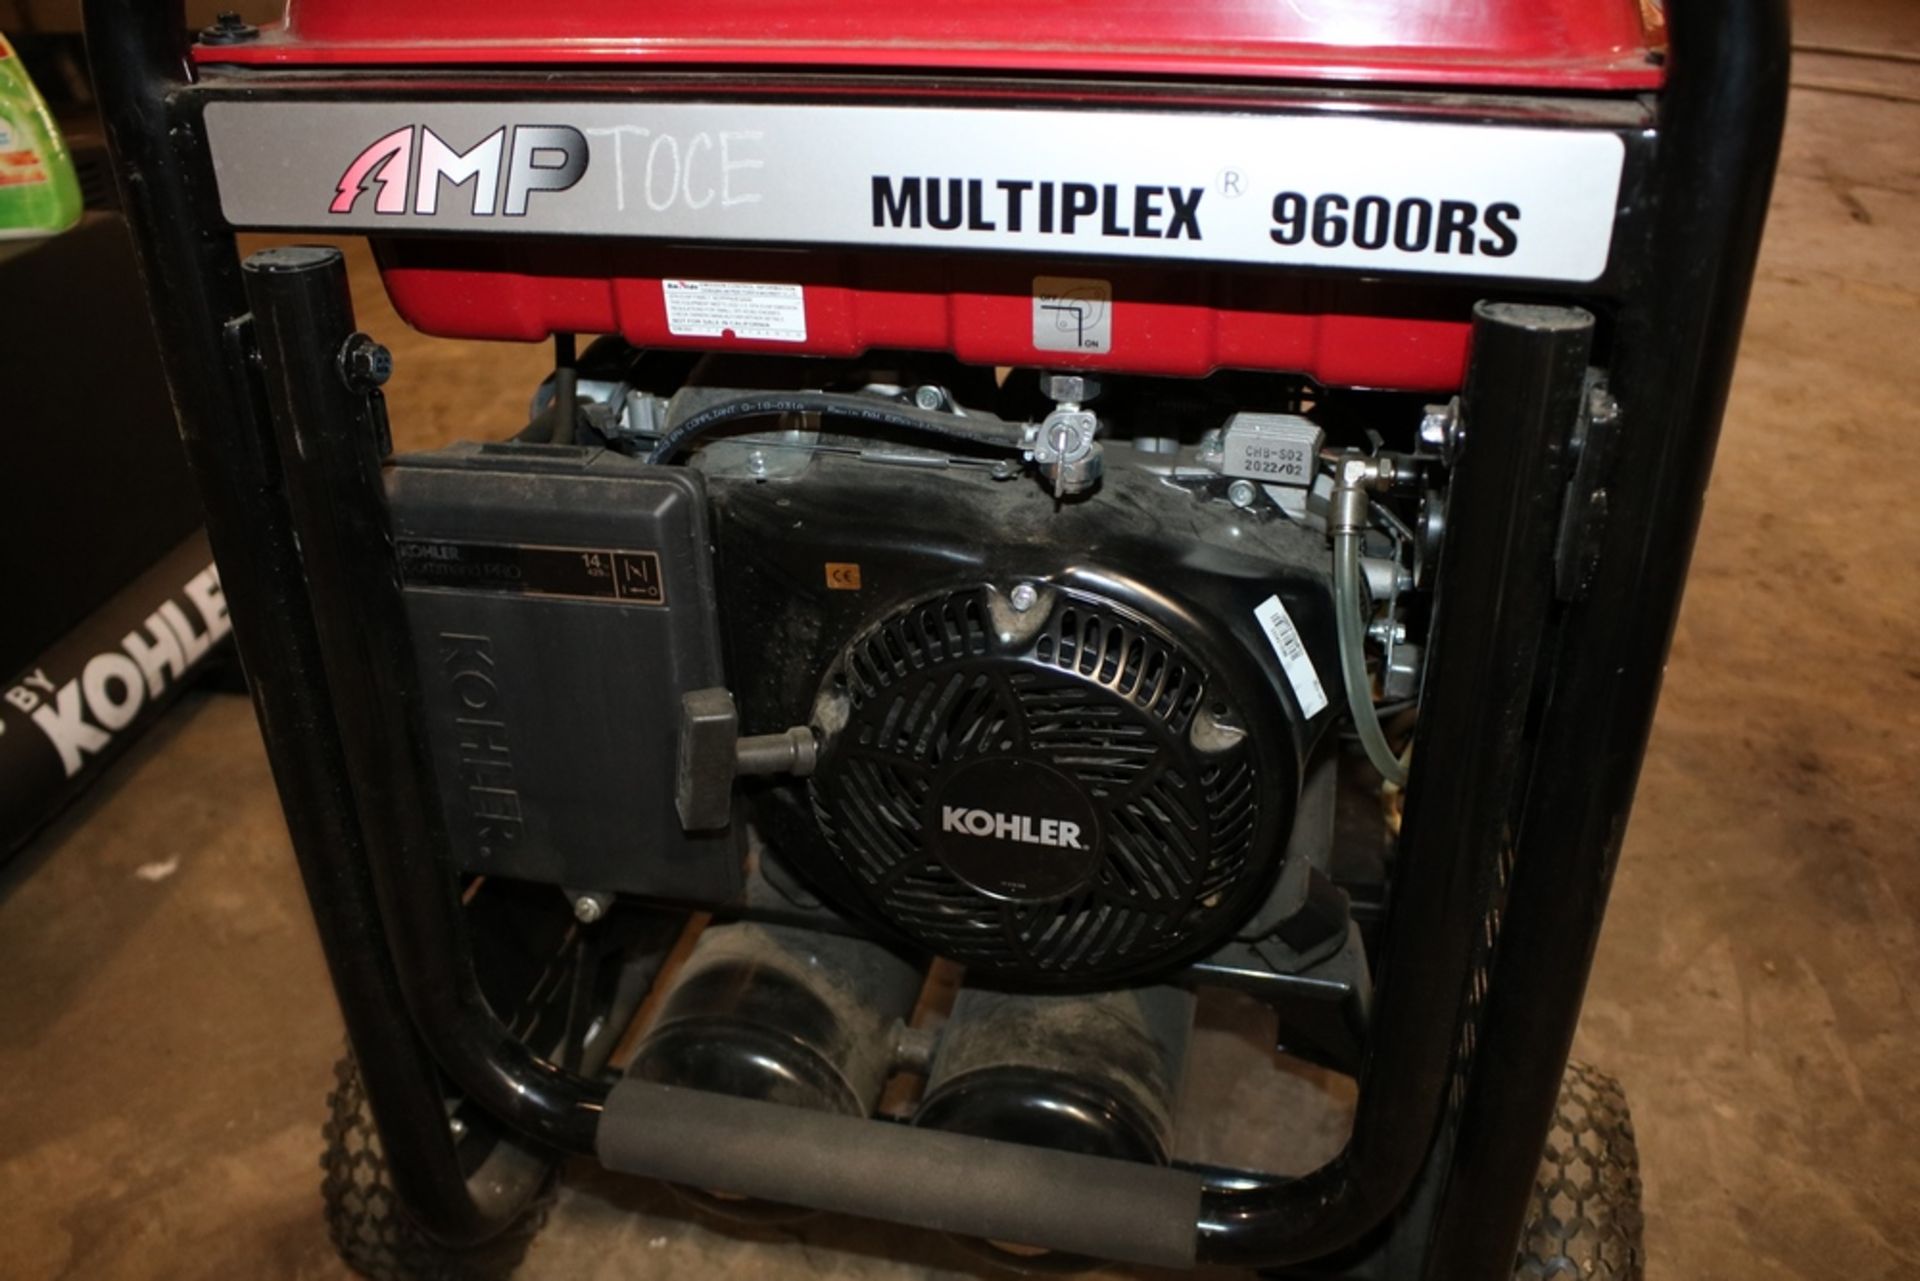 Kohler Multiplex 9600RS Air Compressor, - Image 9 of 16